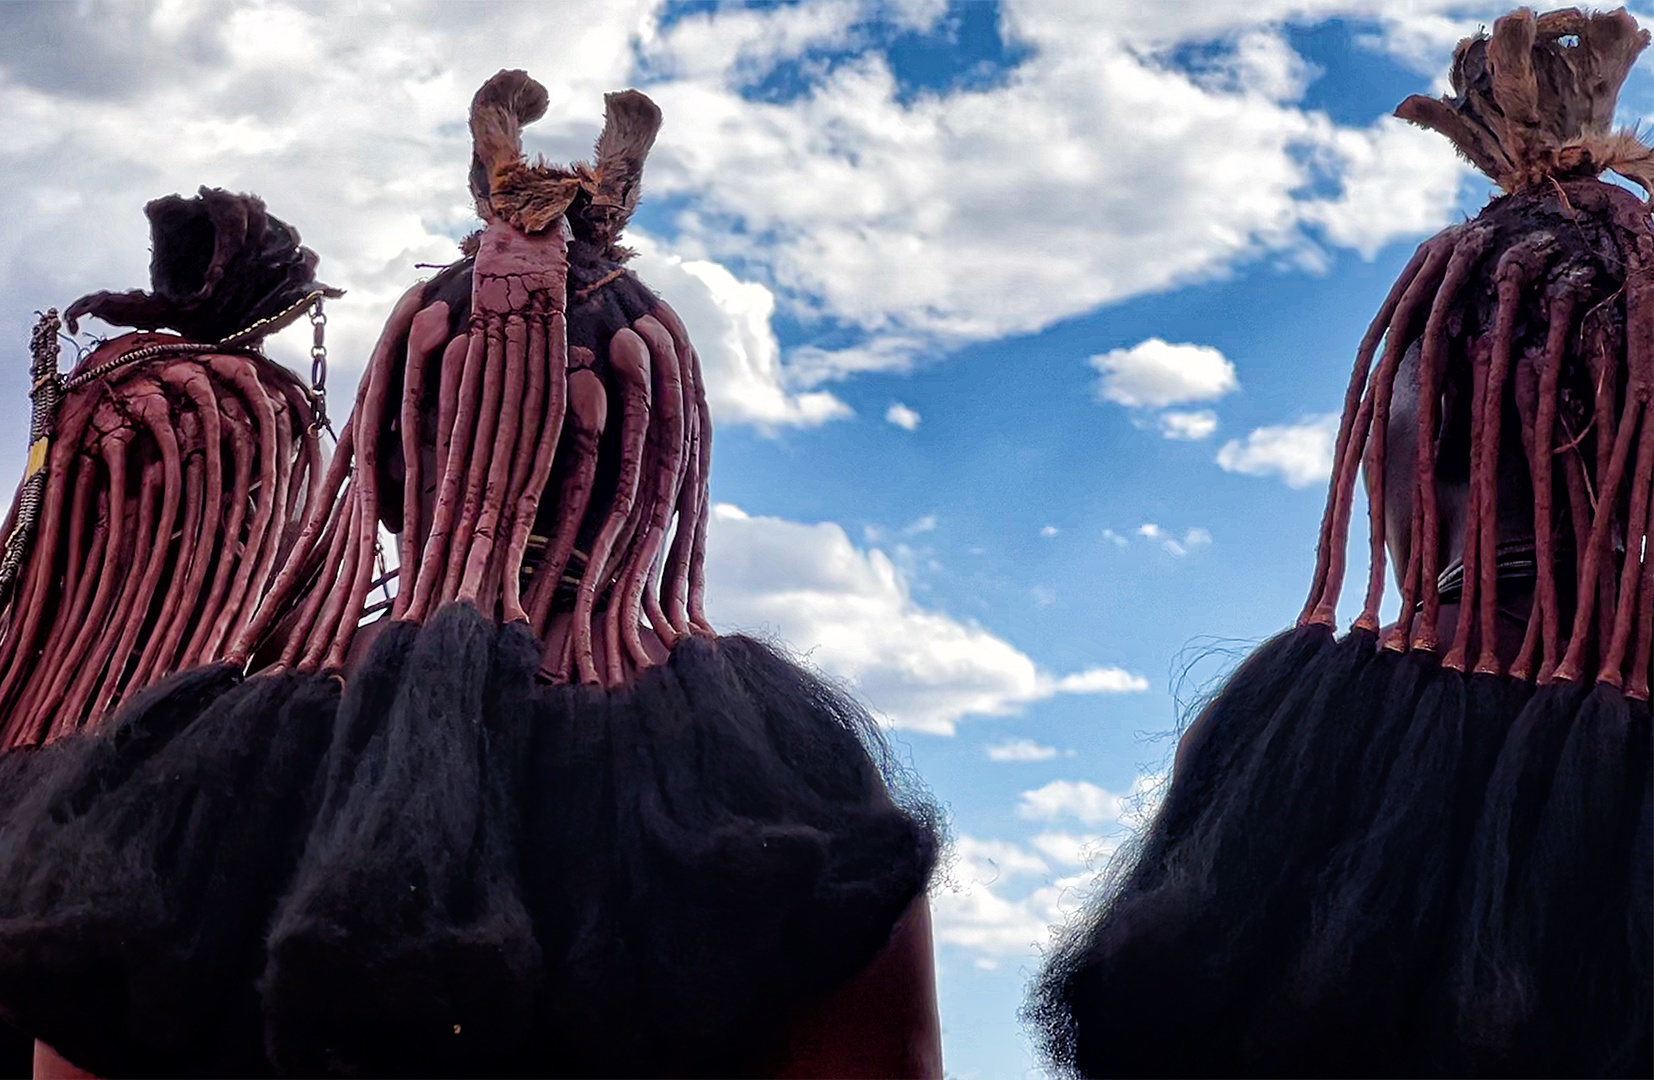 Acconciatura capelli delle donne Himba